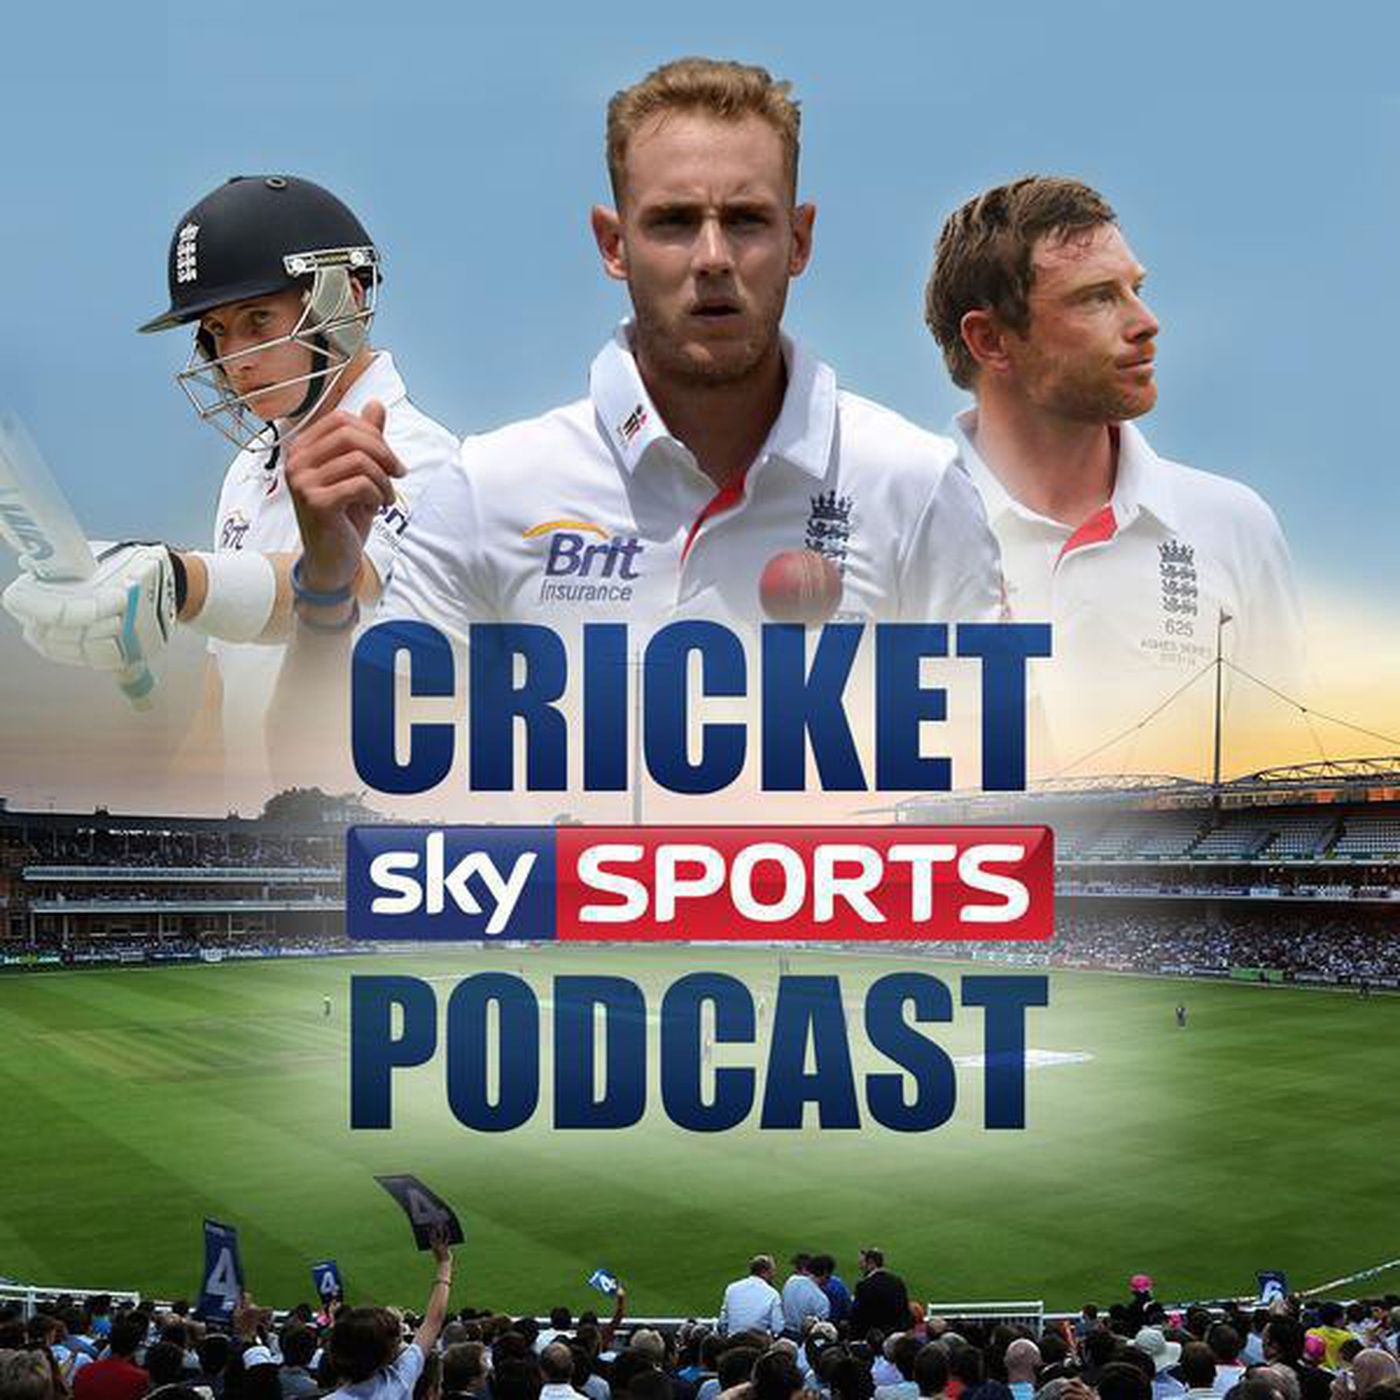 Sky Sports Cricket Podcast - 17th July